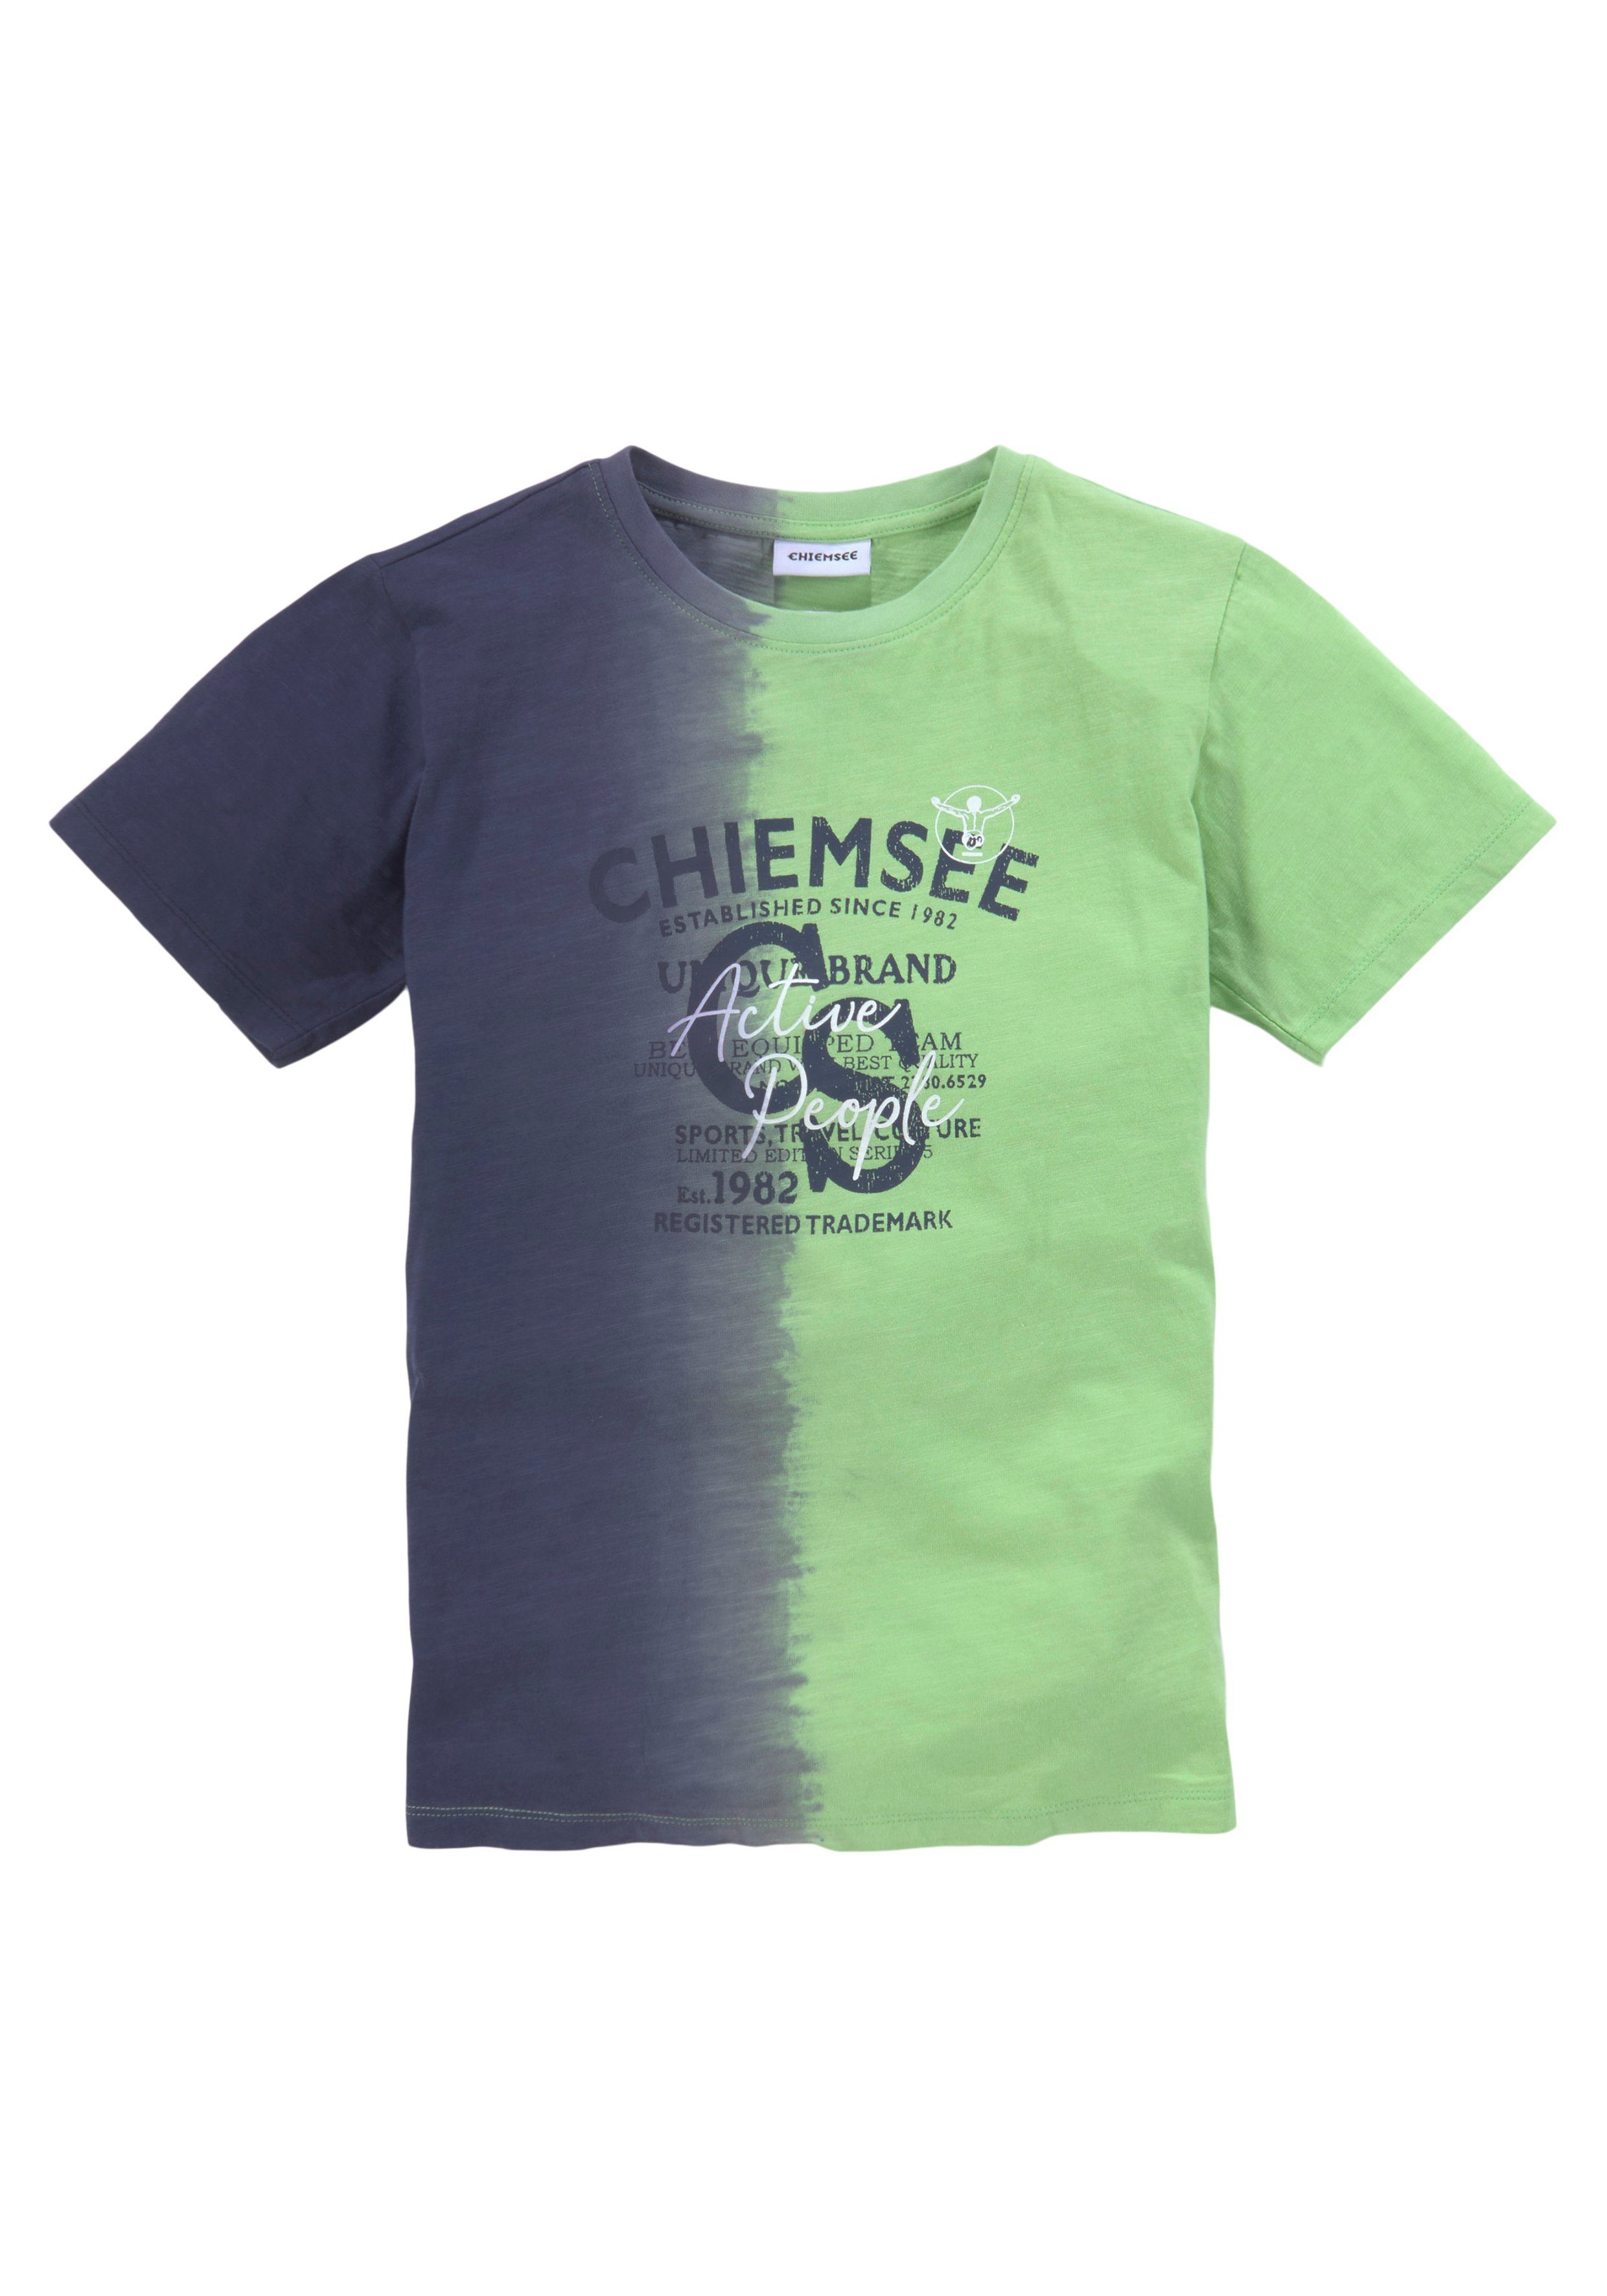 Farbverlauf vertikalem T-Shirt Chiemsee Farbverlauf mit